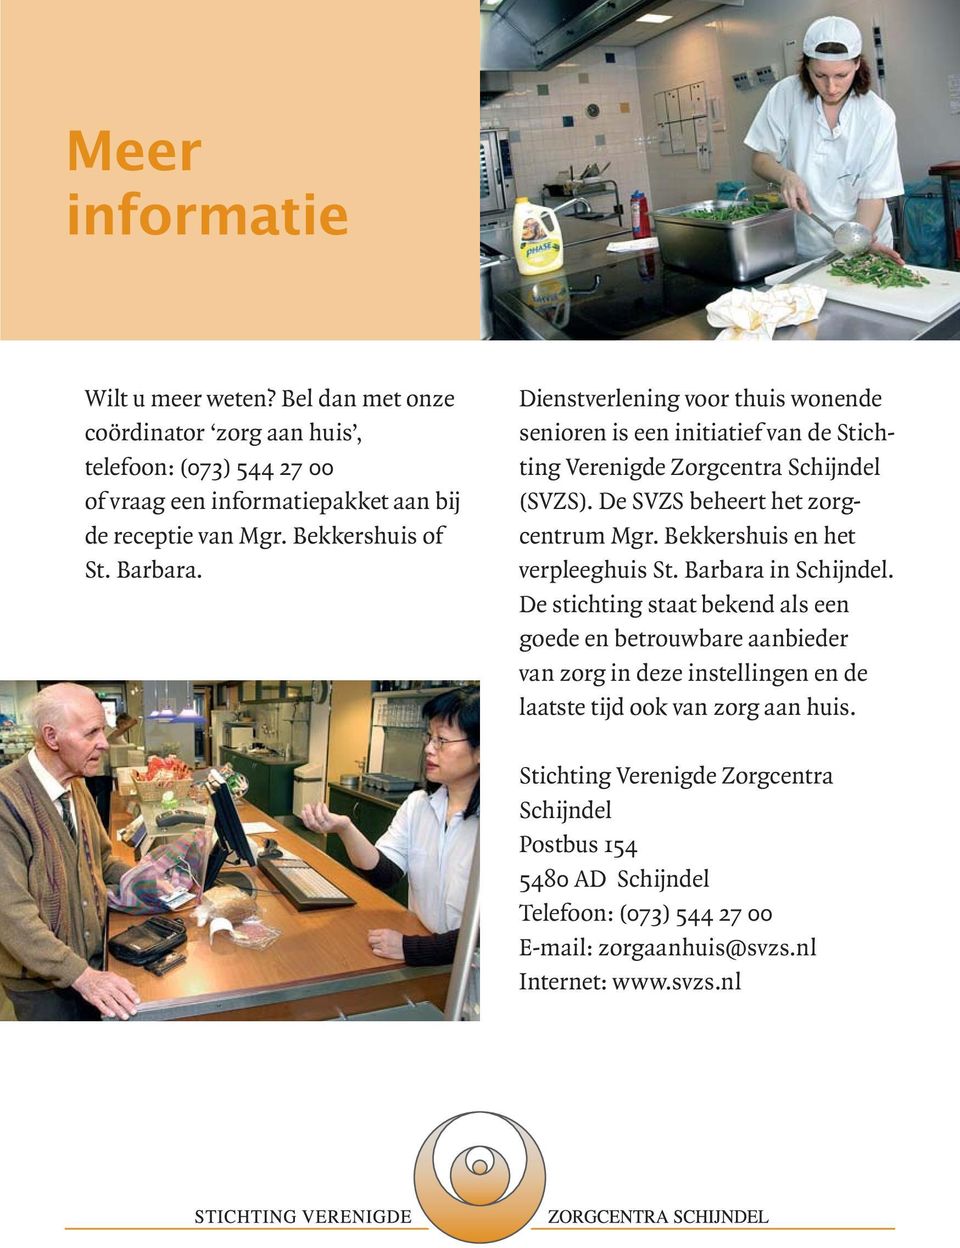 De SVZS beheert het zorgcentrum Mgr. Bekkershuis en het verpleeghuis St. Barbara in Schijndel.